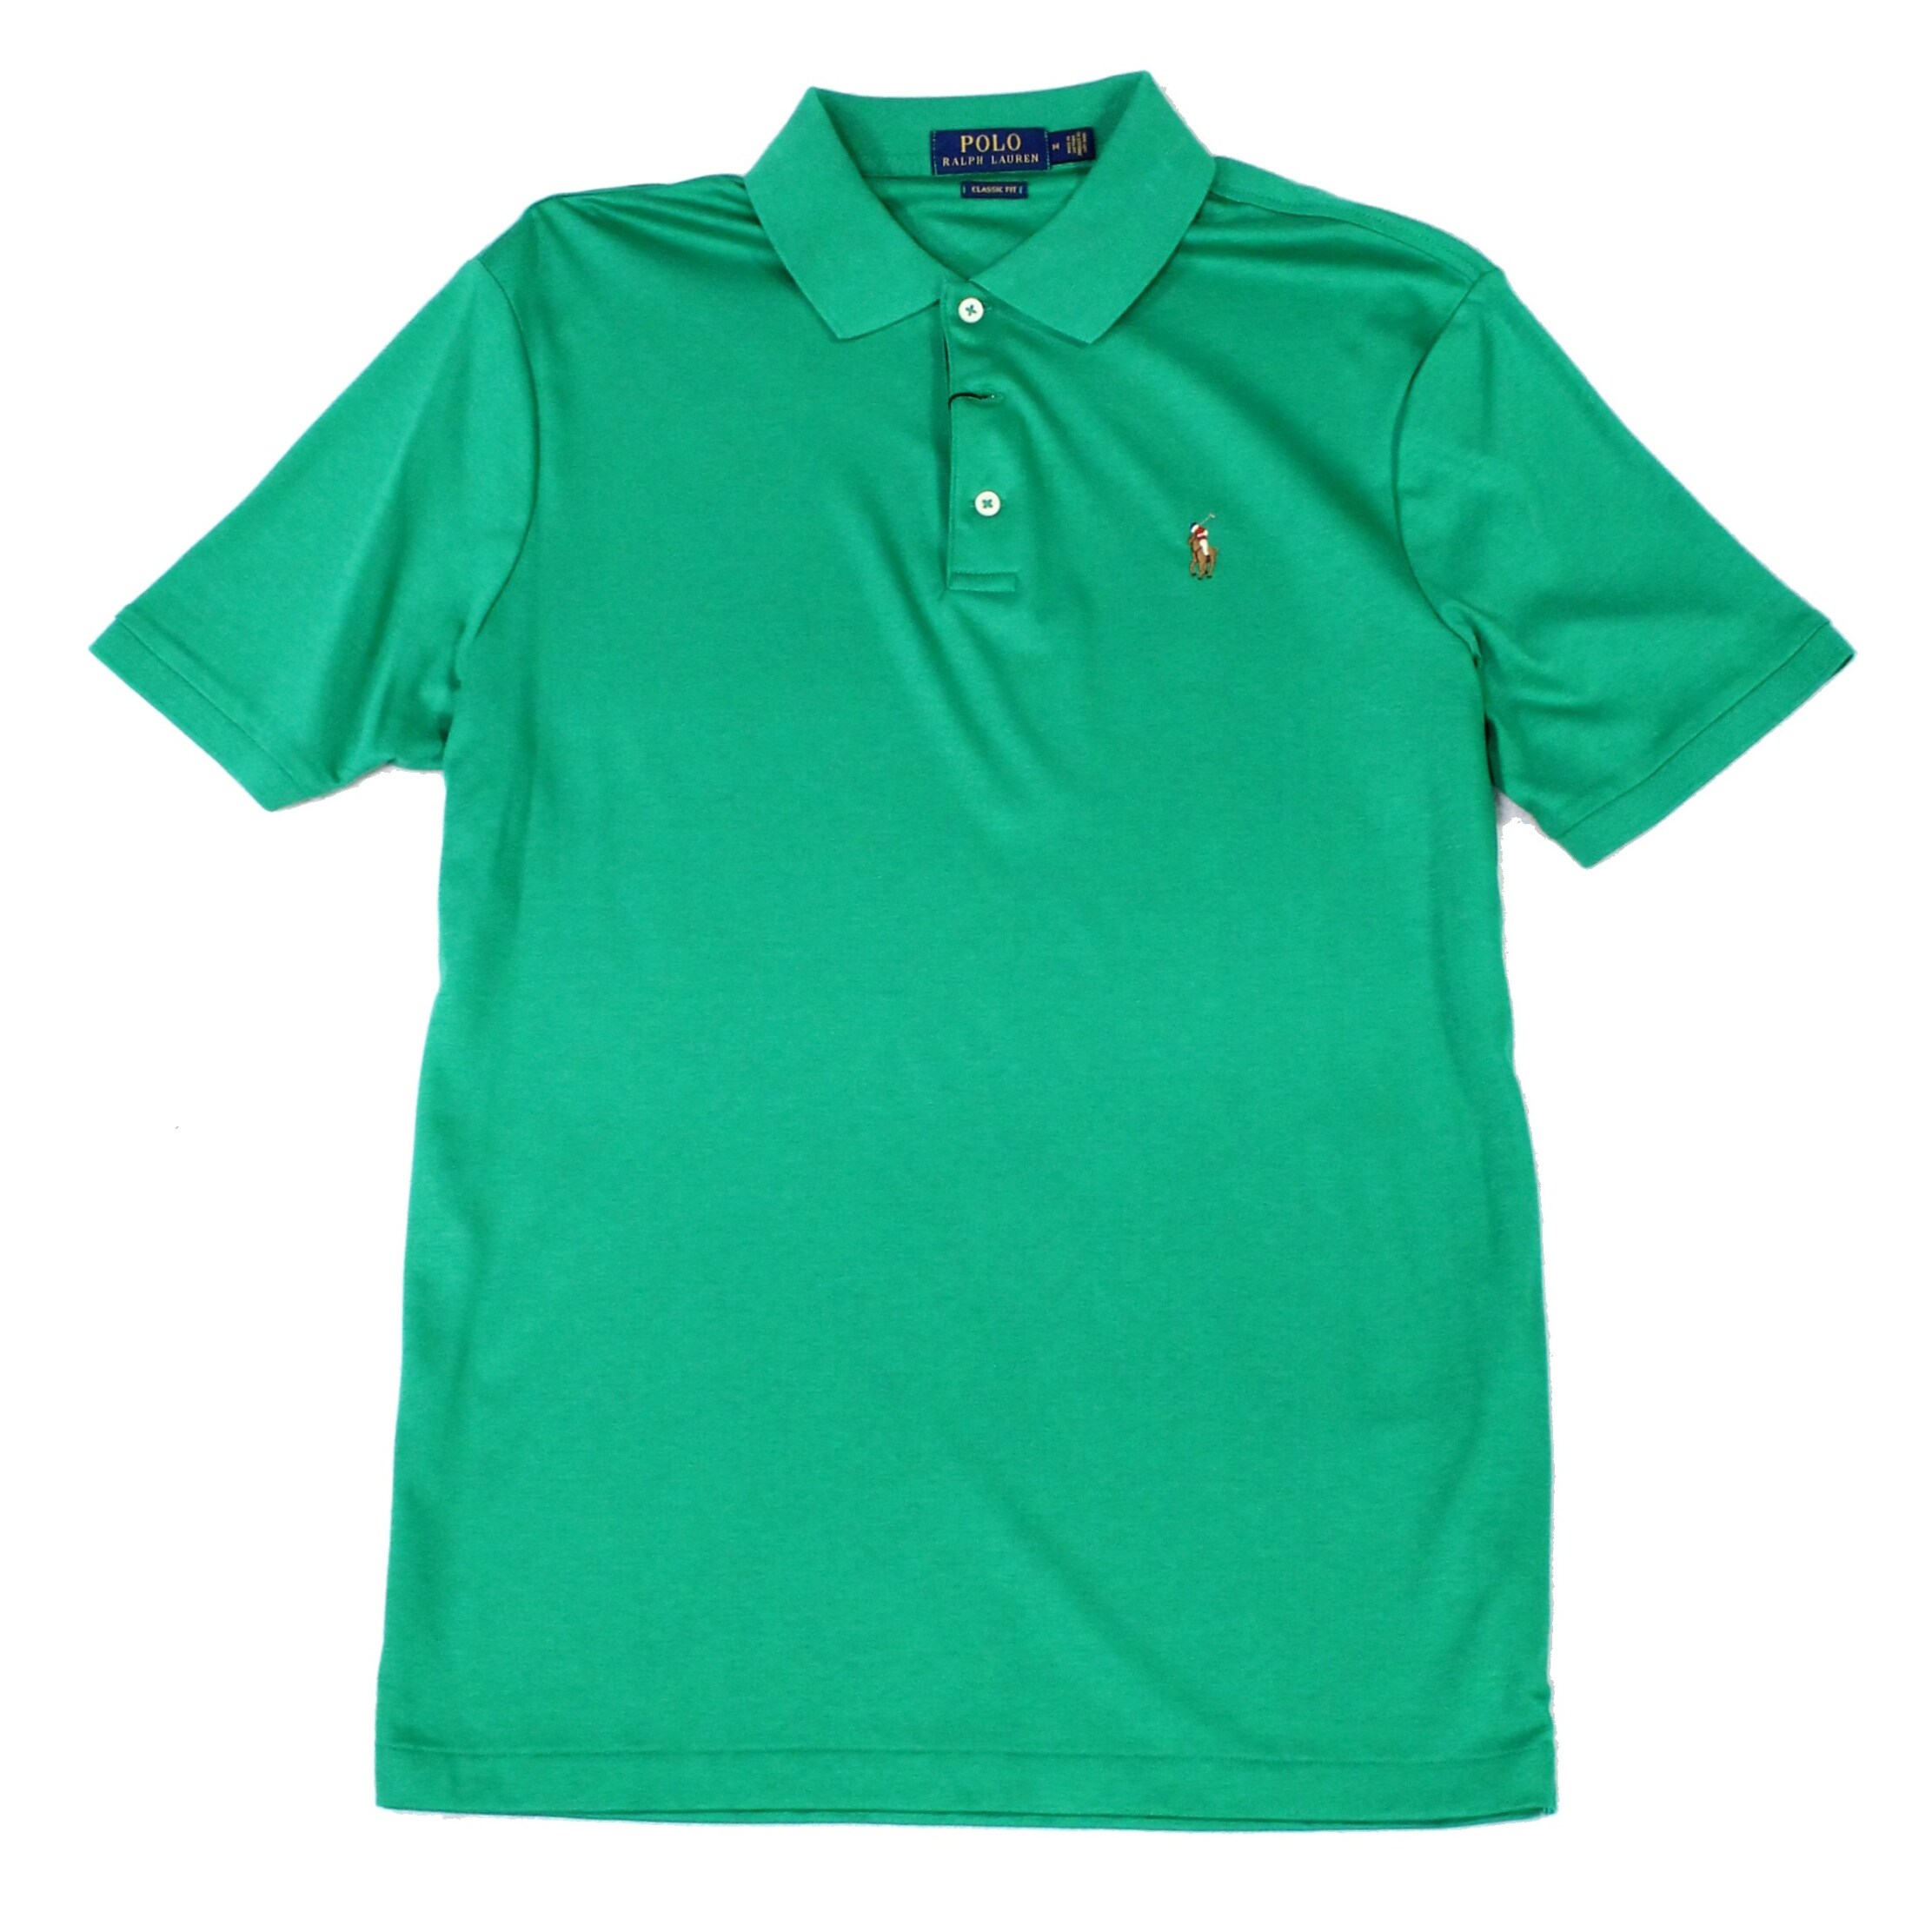 mens green ralph lauren polo shirt